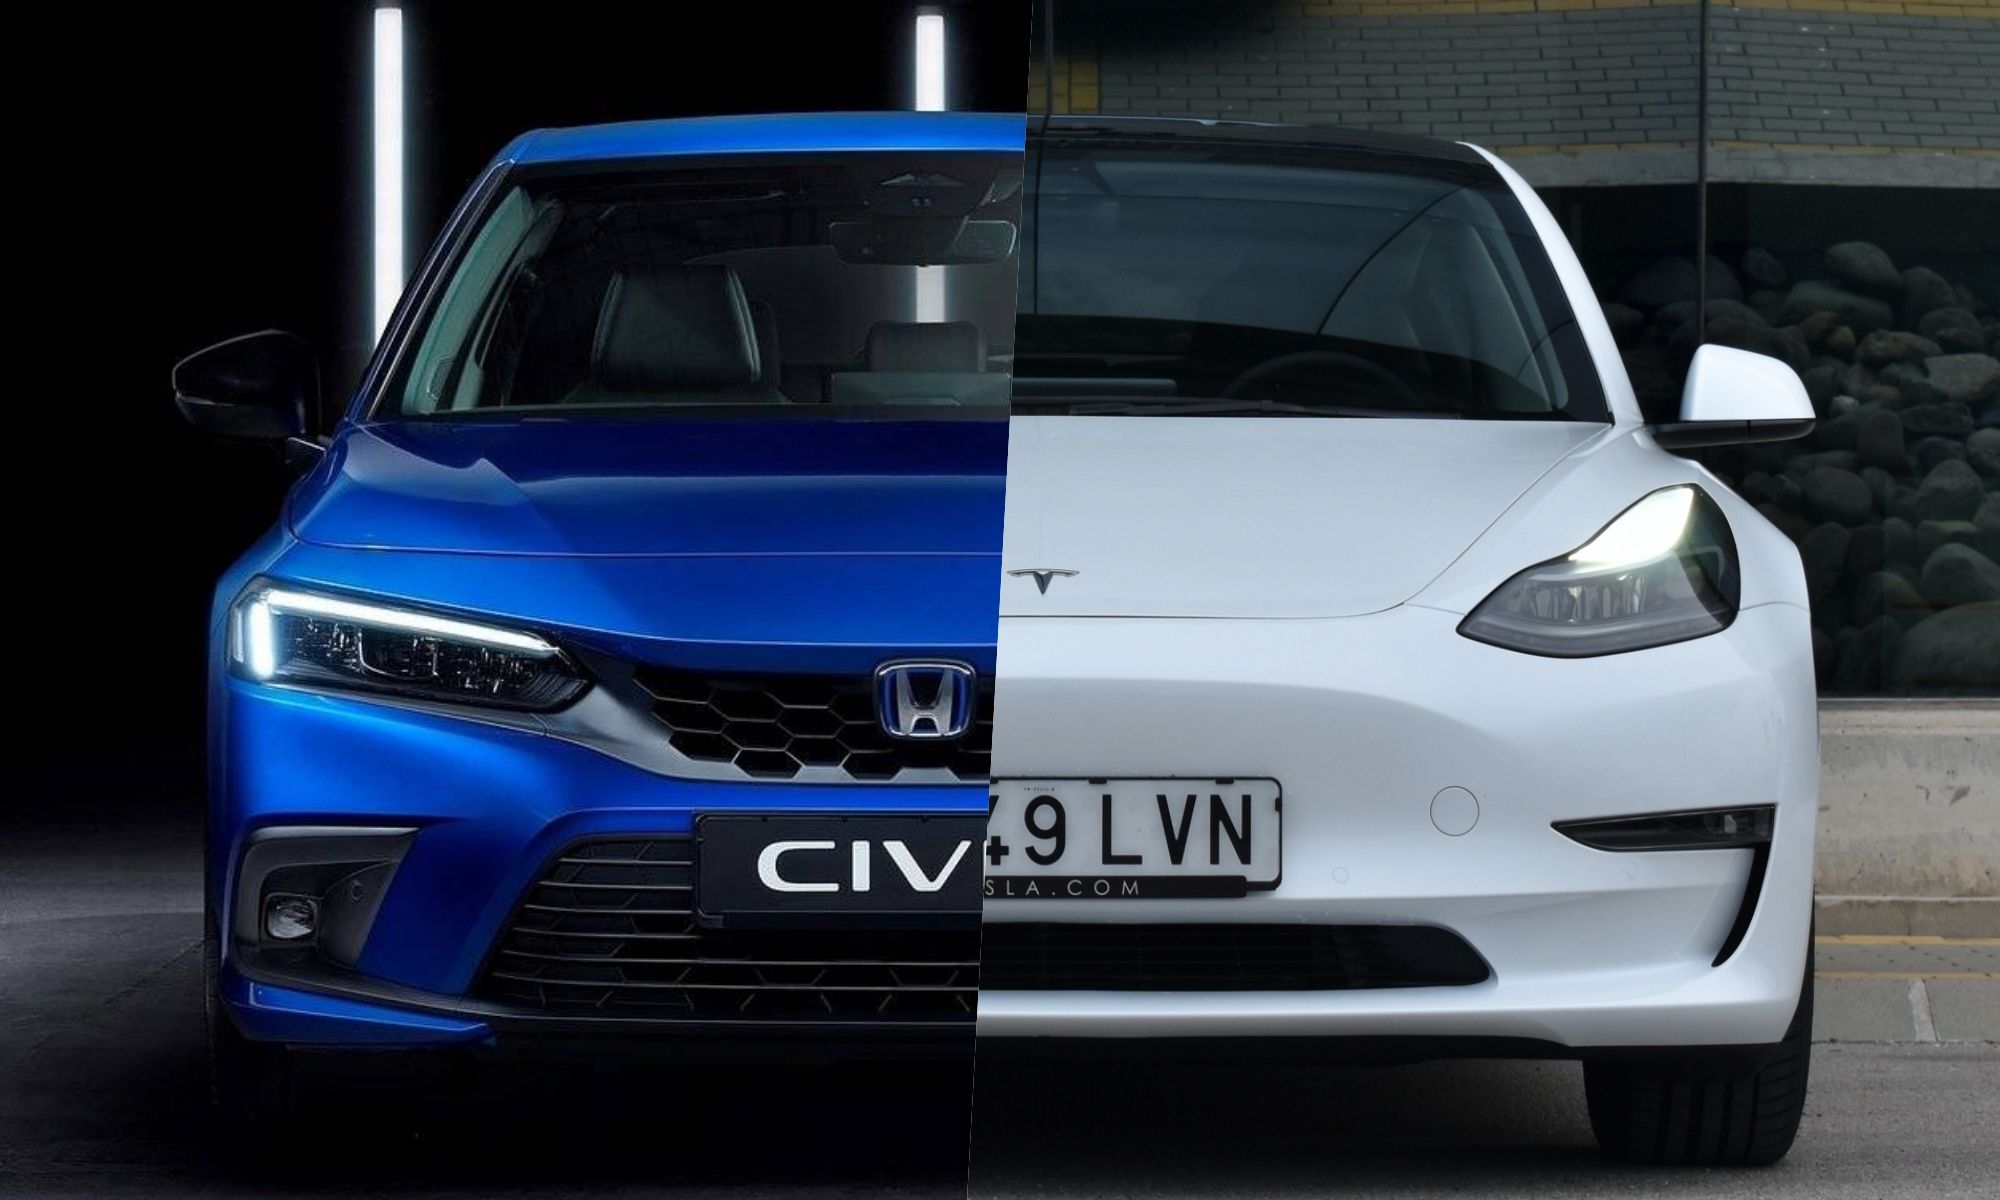 Los modelos comparados son un Tesla Model 3 básico y un Honda Accord, que en España cuesta lo mismo que un Civic.